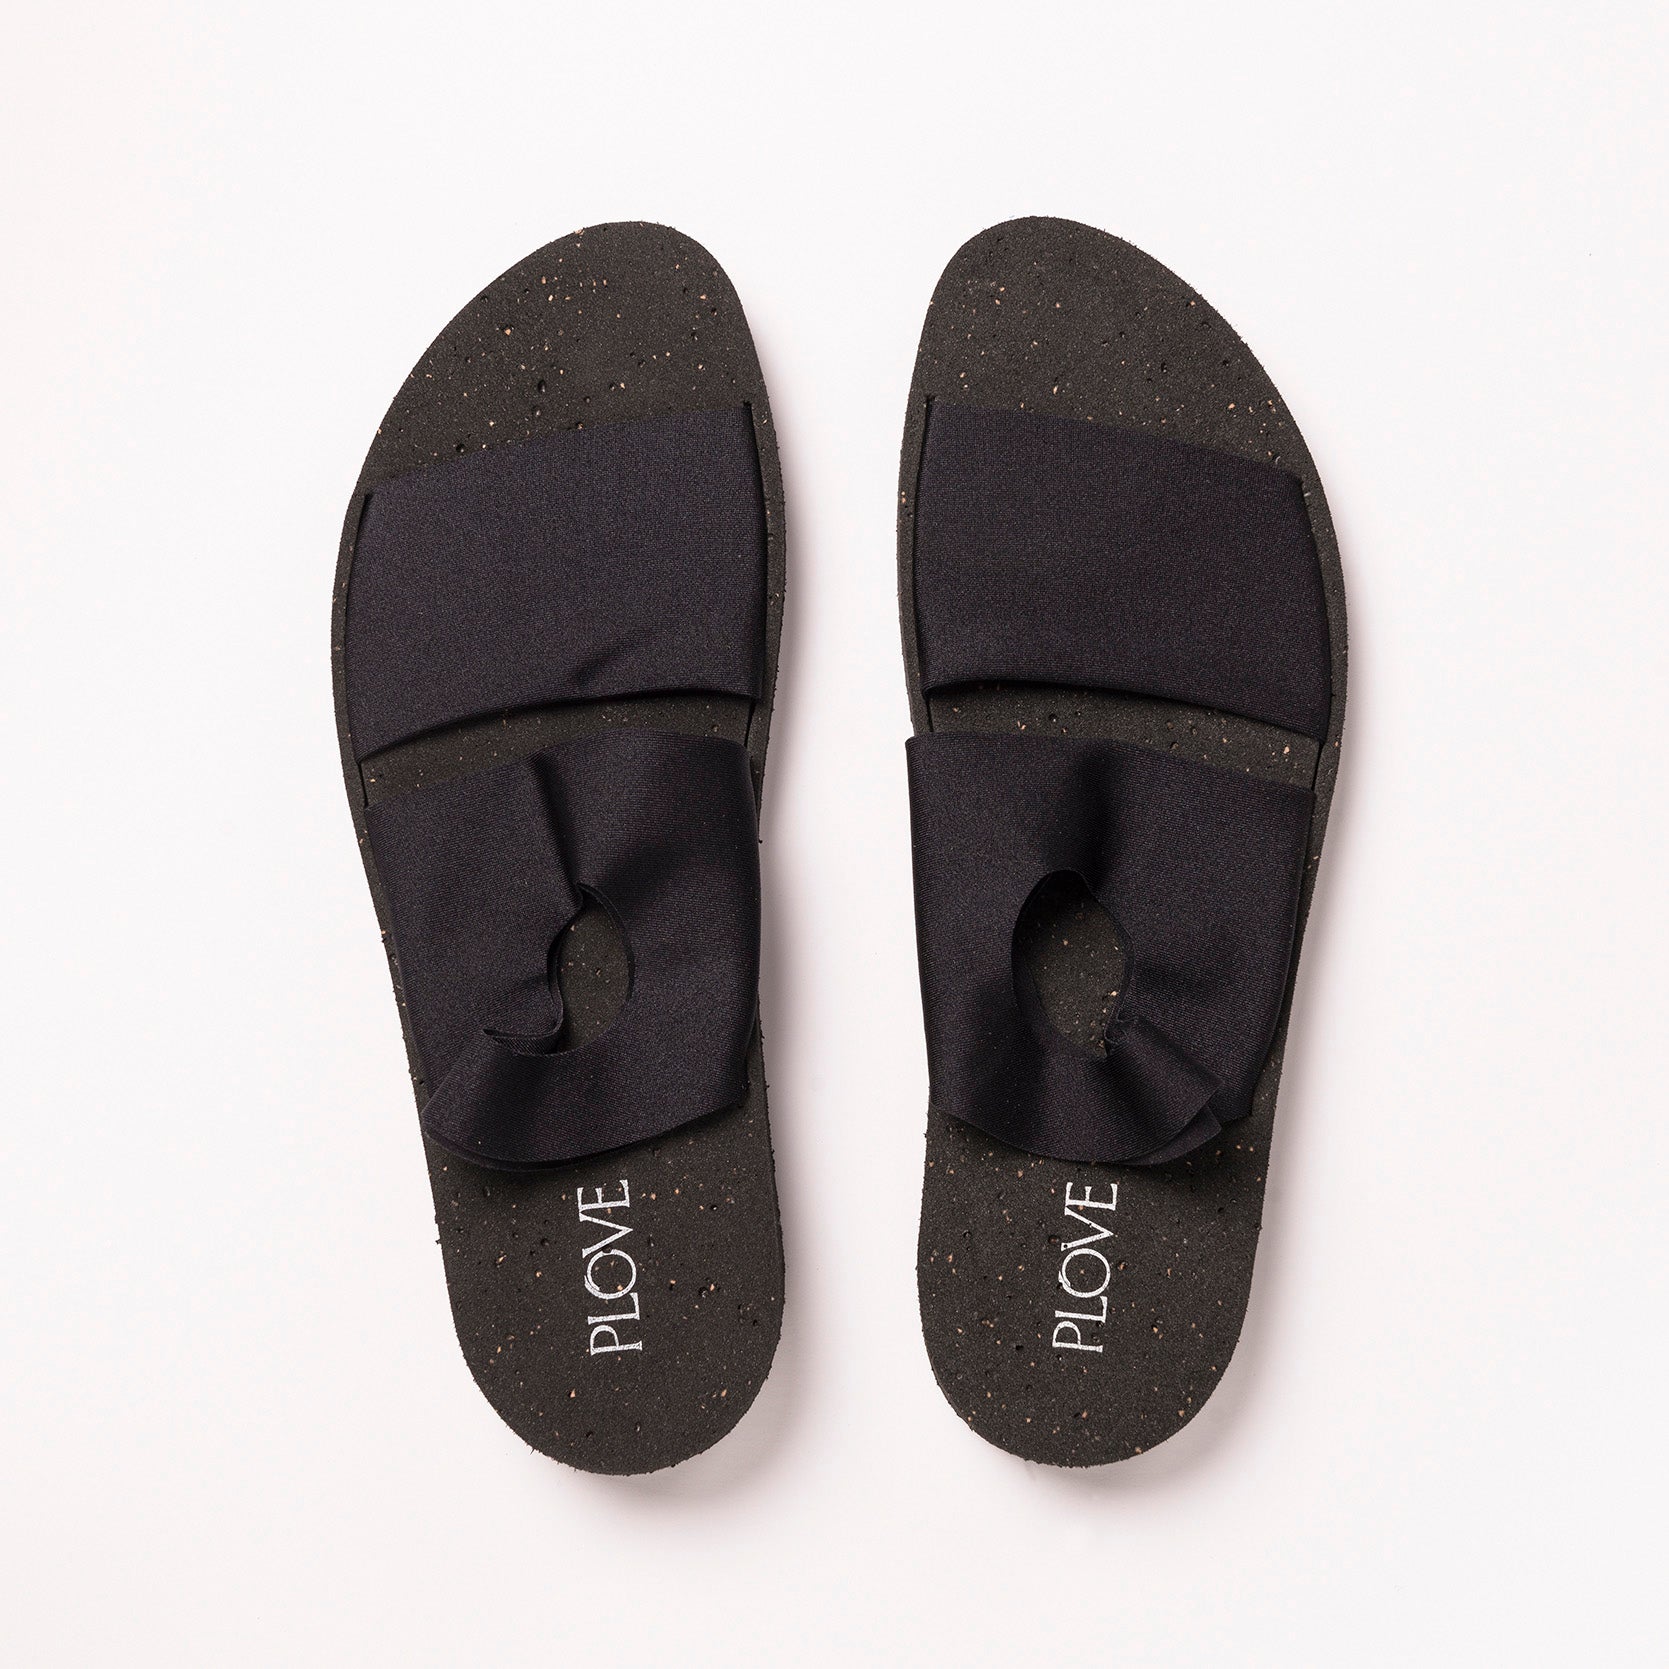 Sandals Carbon Black two-piece